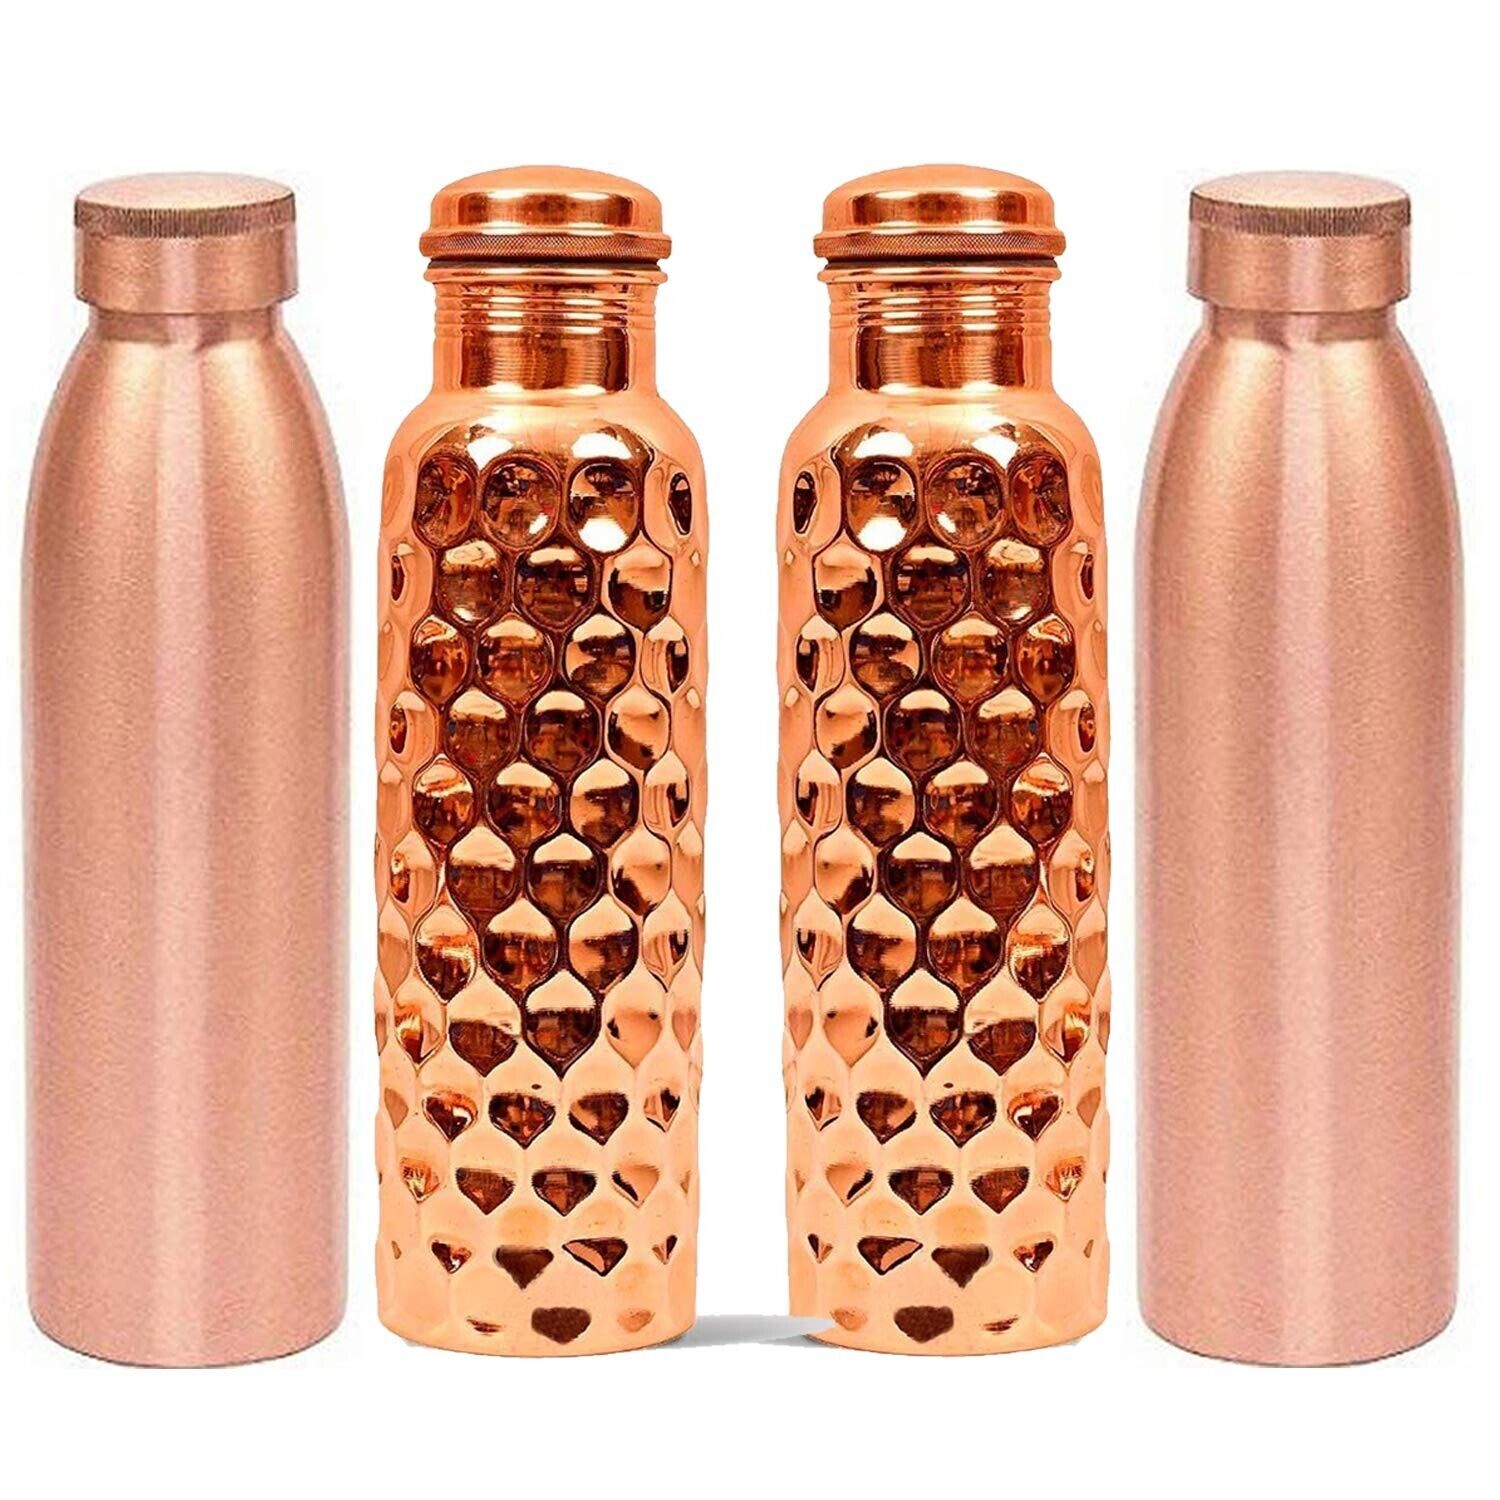 Combo Offer Matt Finish & Diamond Cut Copper Bottles for Water 1 Liter Set of 4 